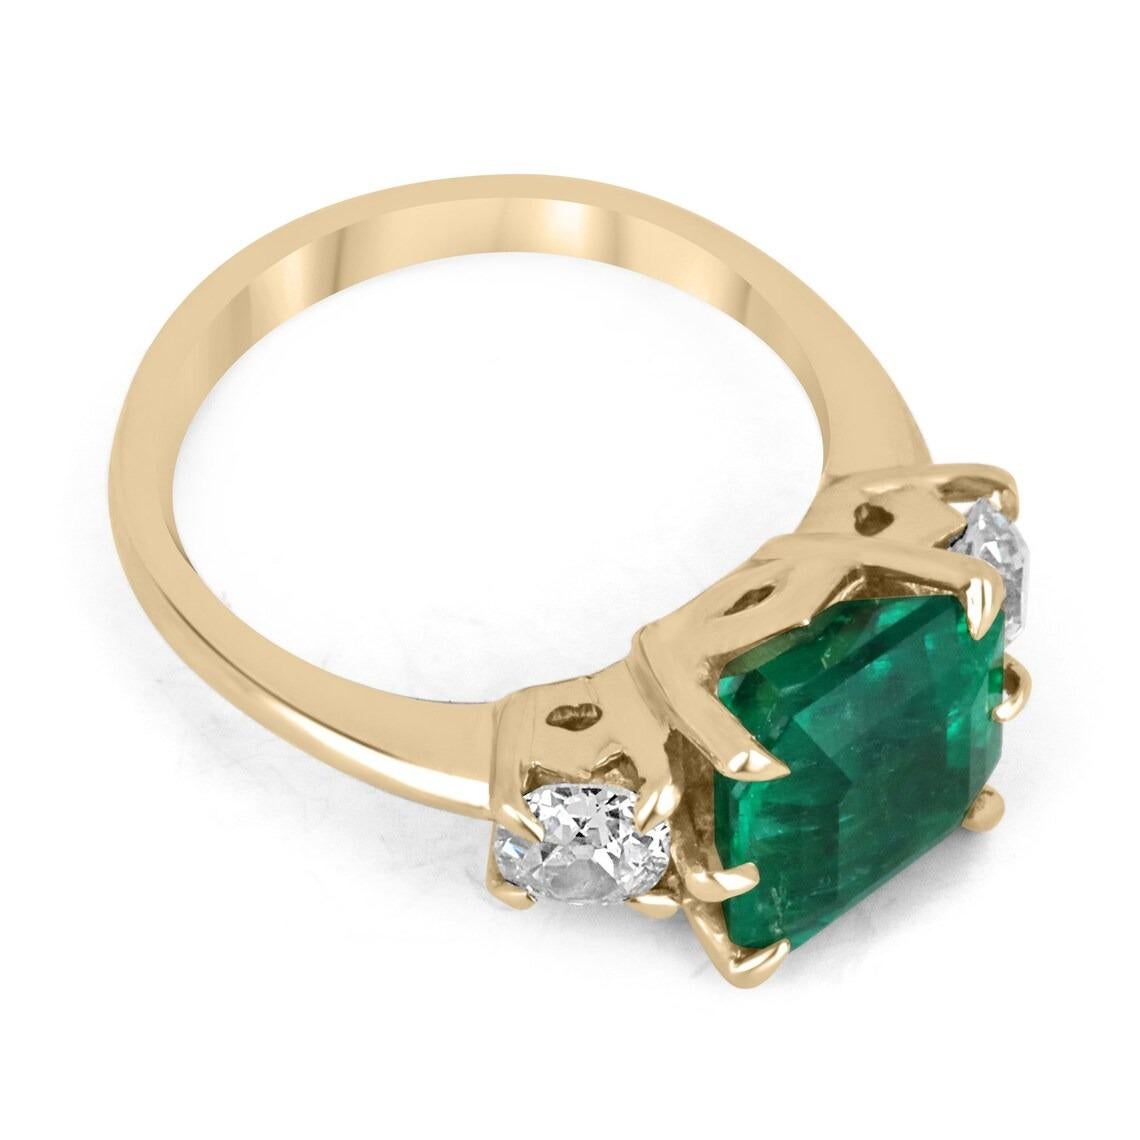 Ein viktorianisch inspirierter Dreisteinring mit kolumbianischem Smaragd und Diamanten im alten europäischen Schliff. Dieser Ring ist aus glänzendem 18-karätigem Gold gefertigt und enthält einen seltenen kolumbianischen Smaragd-Asscher mit einem